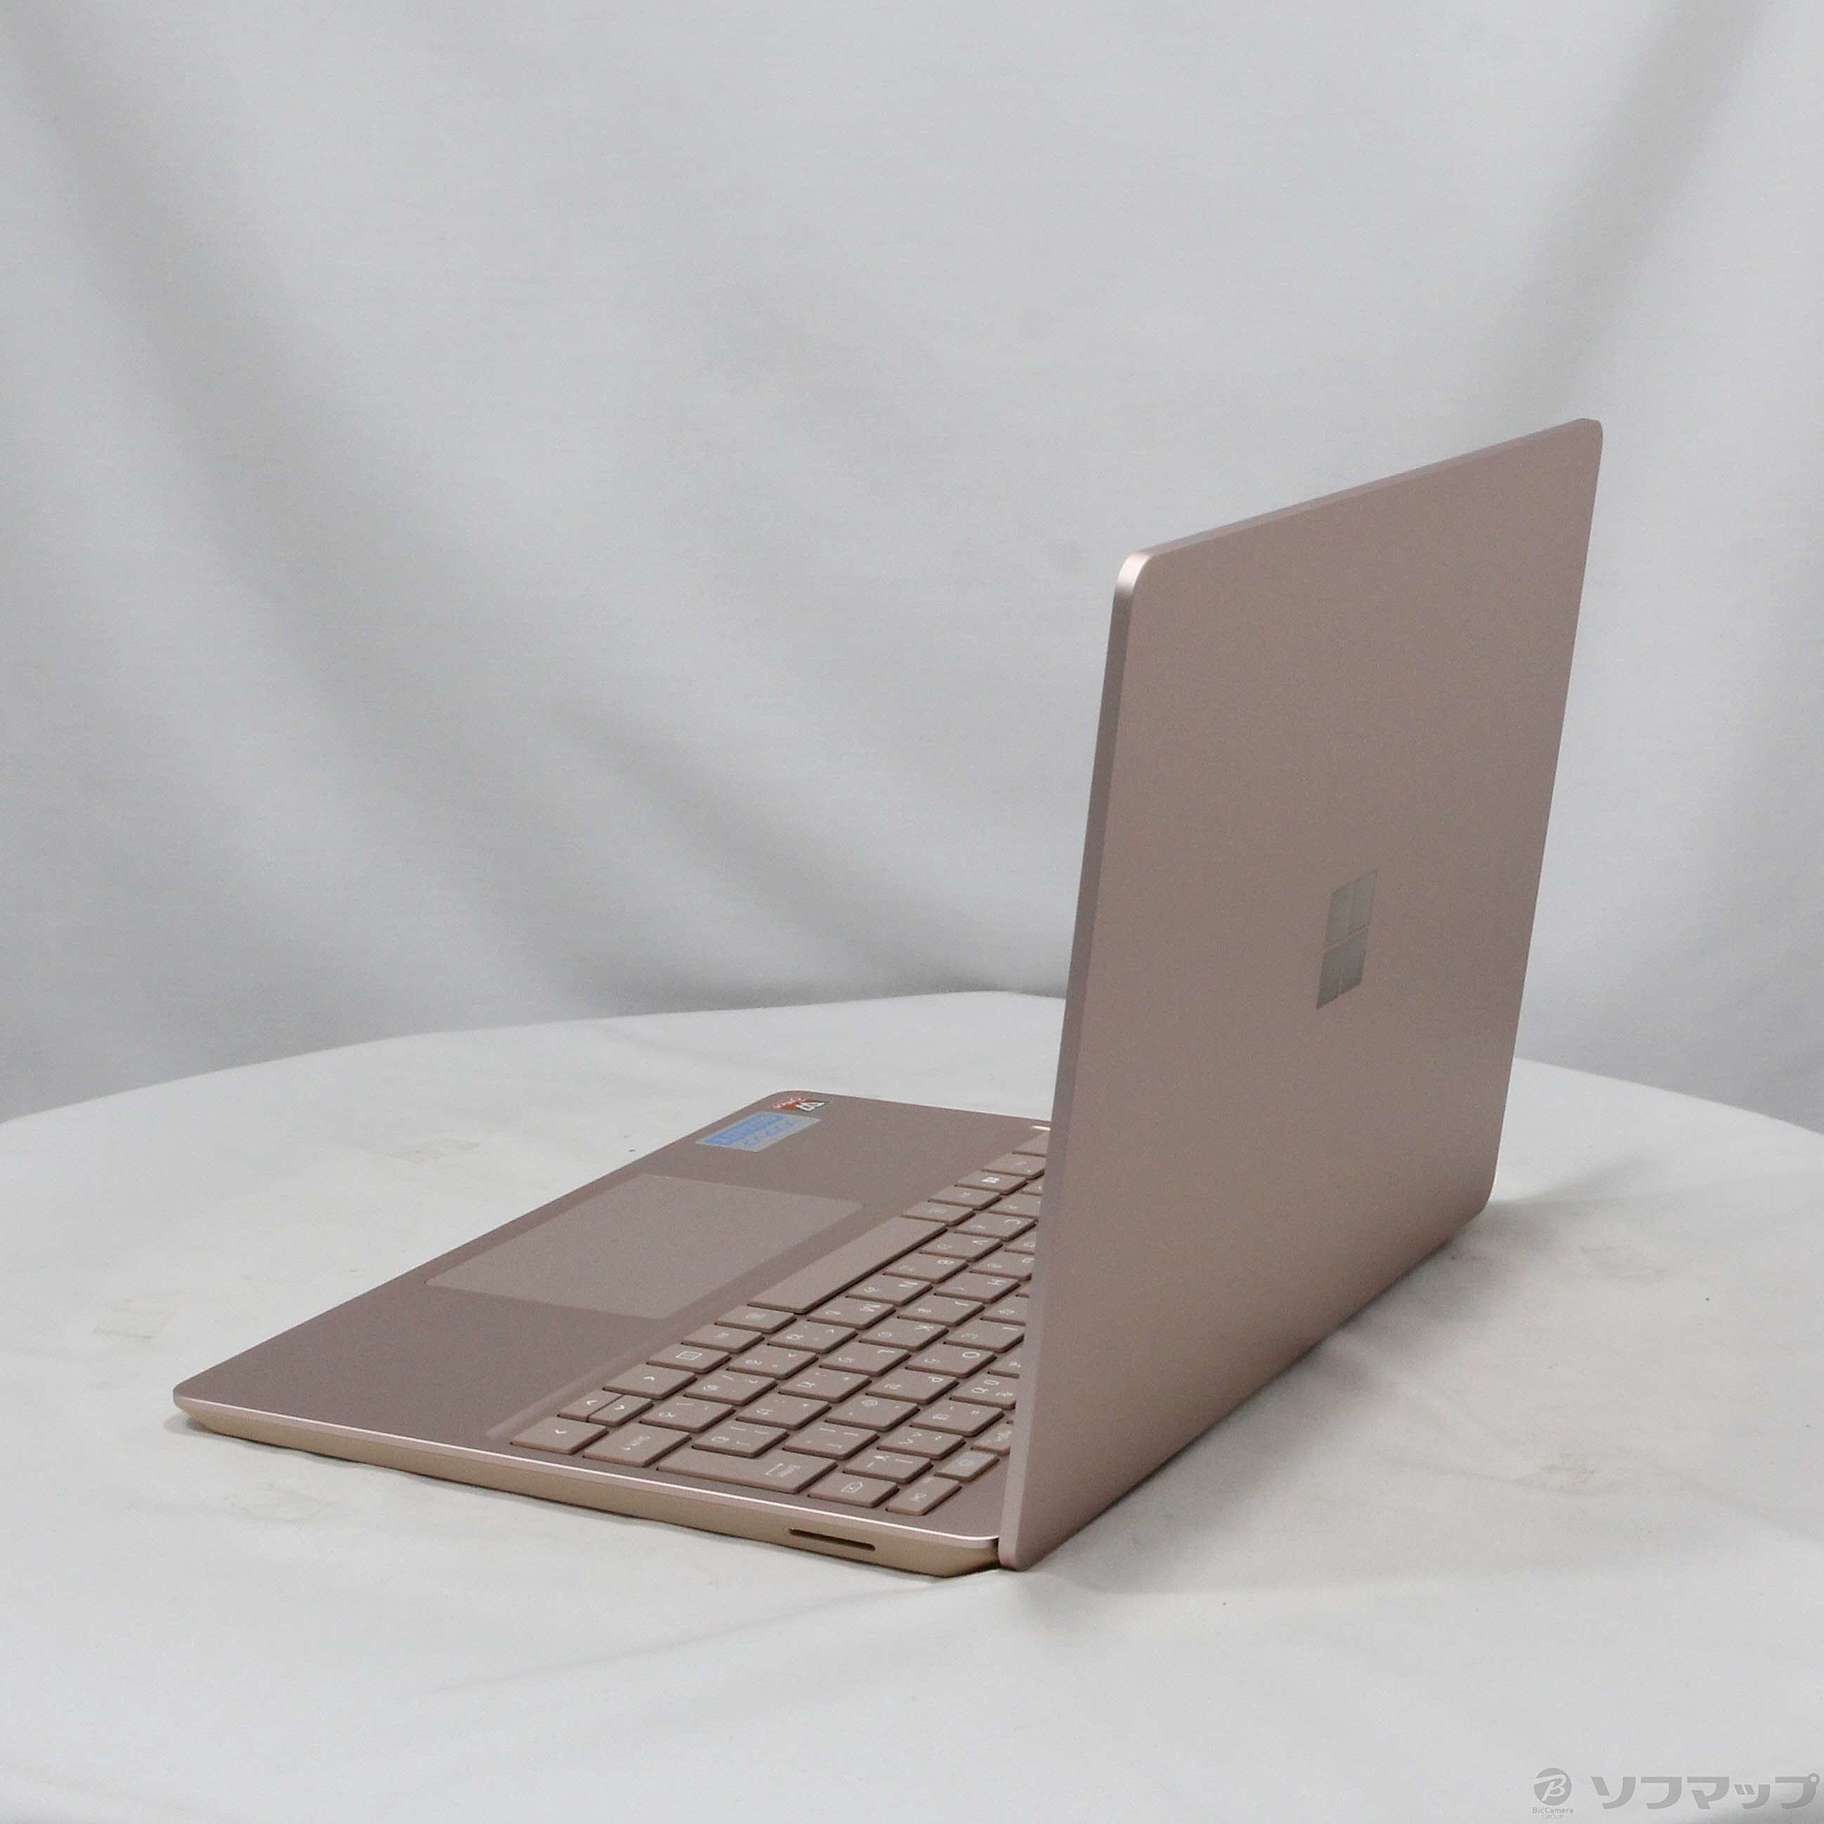 【新品未開封】THJ-00045 Surface Laptop Go